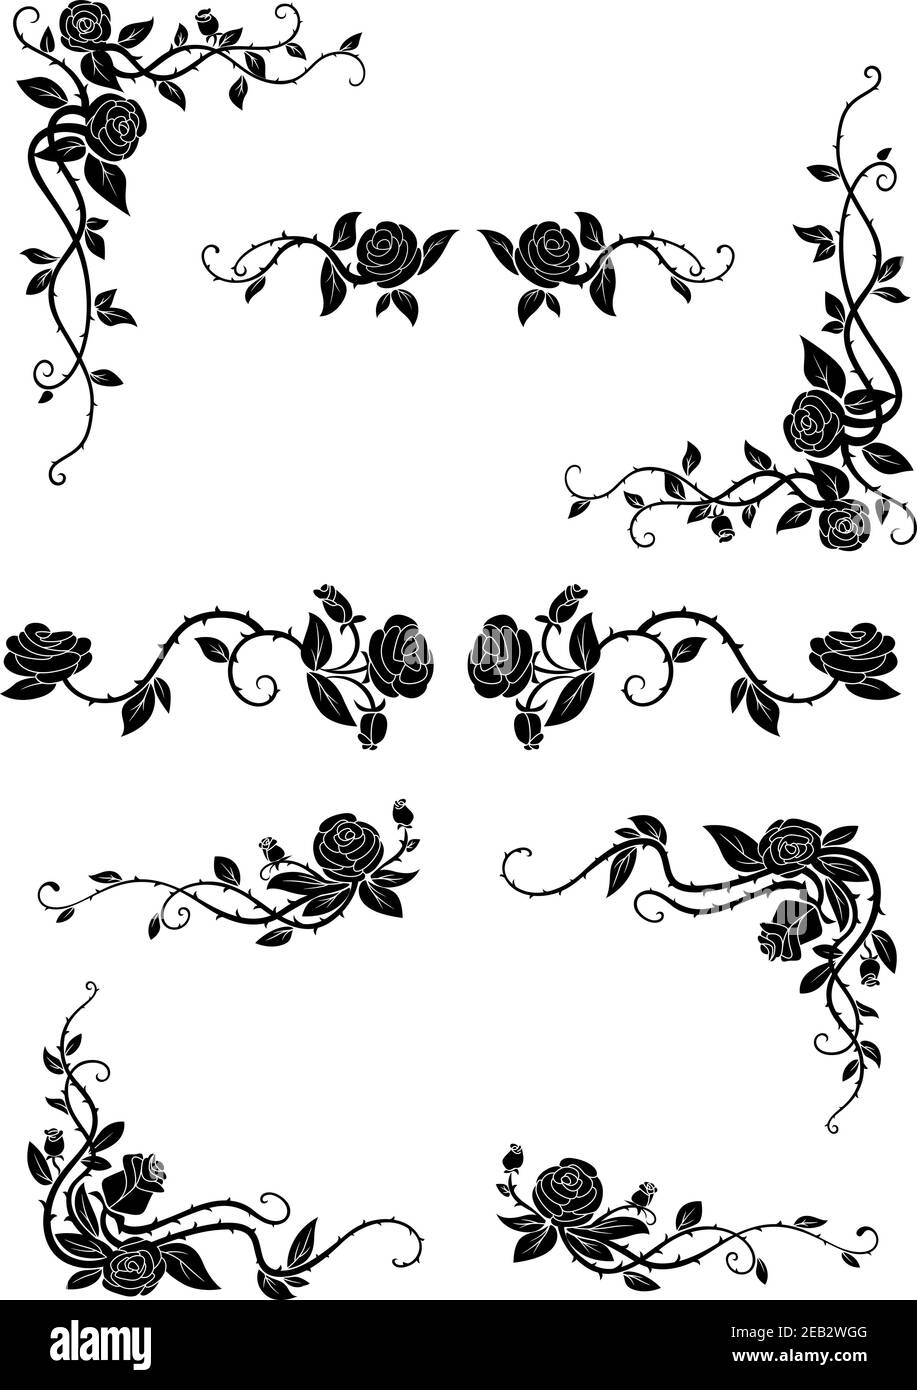 Vintage bordi floreali con rose fiorite, adornate da fiori lussureggianti e papille sinuose. Divisori e angoli retrò Illustrazione Vettoriale